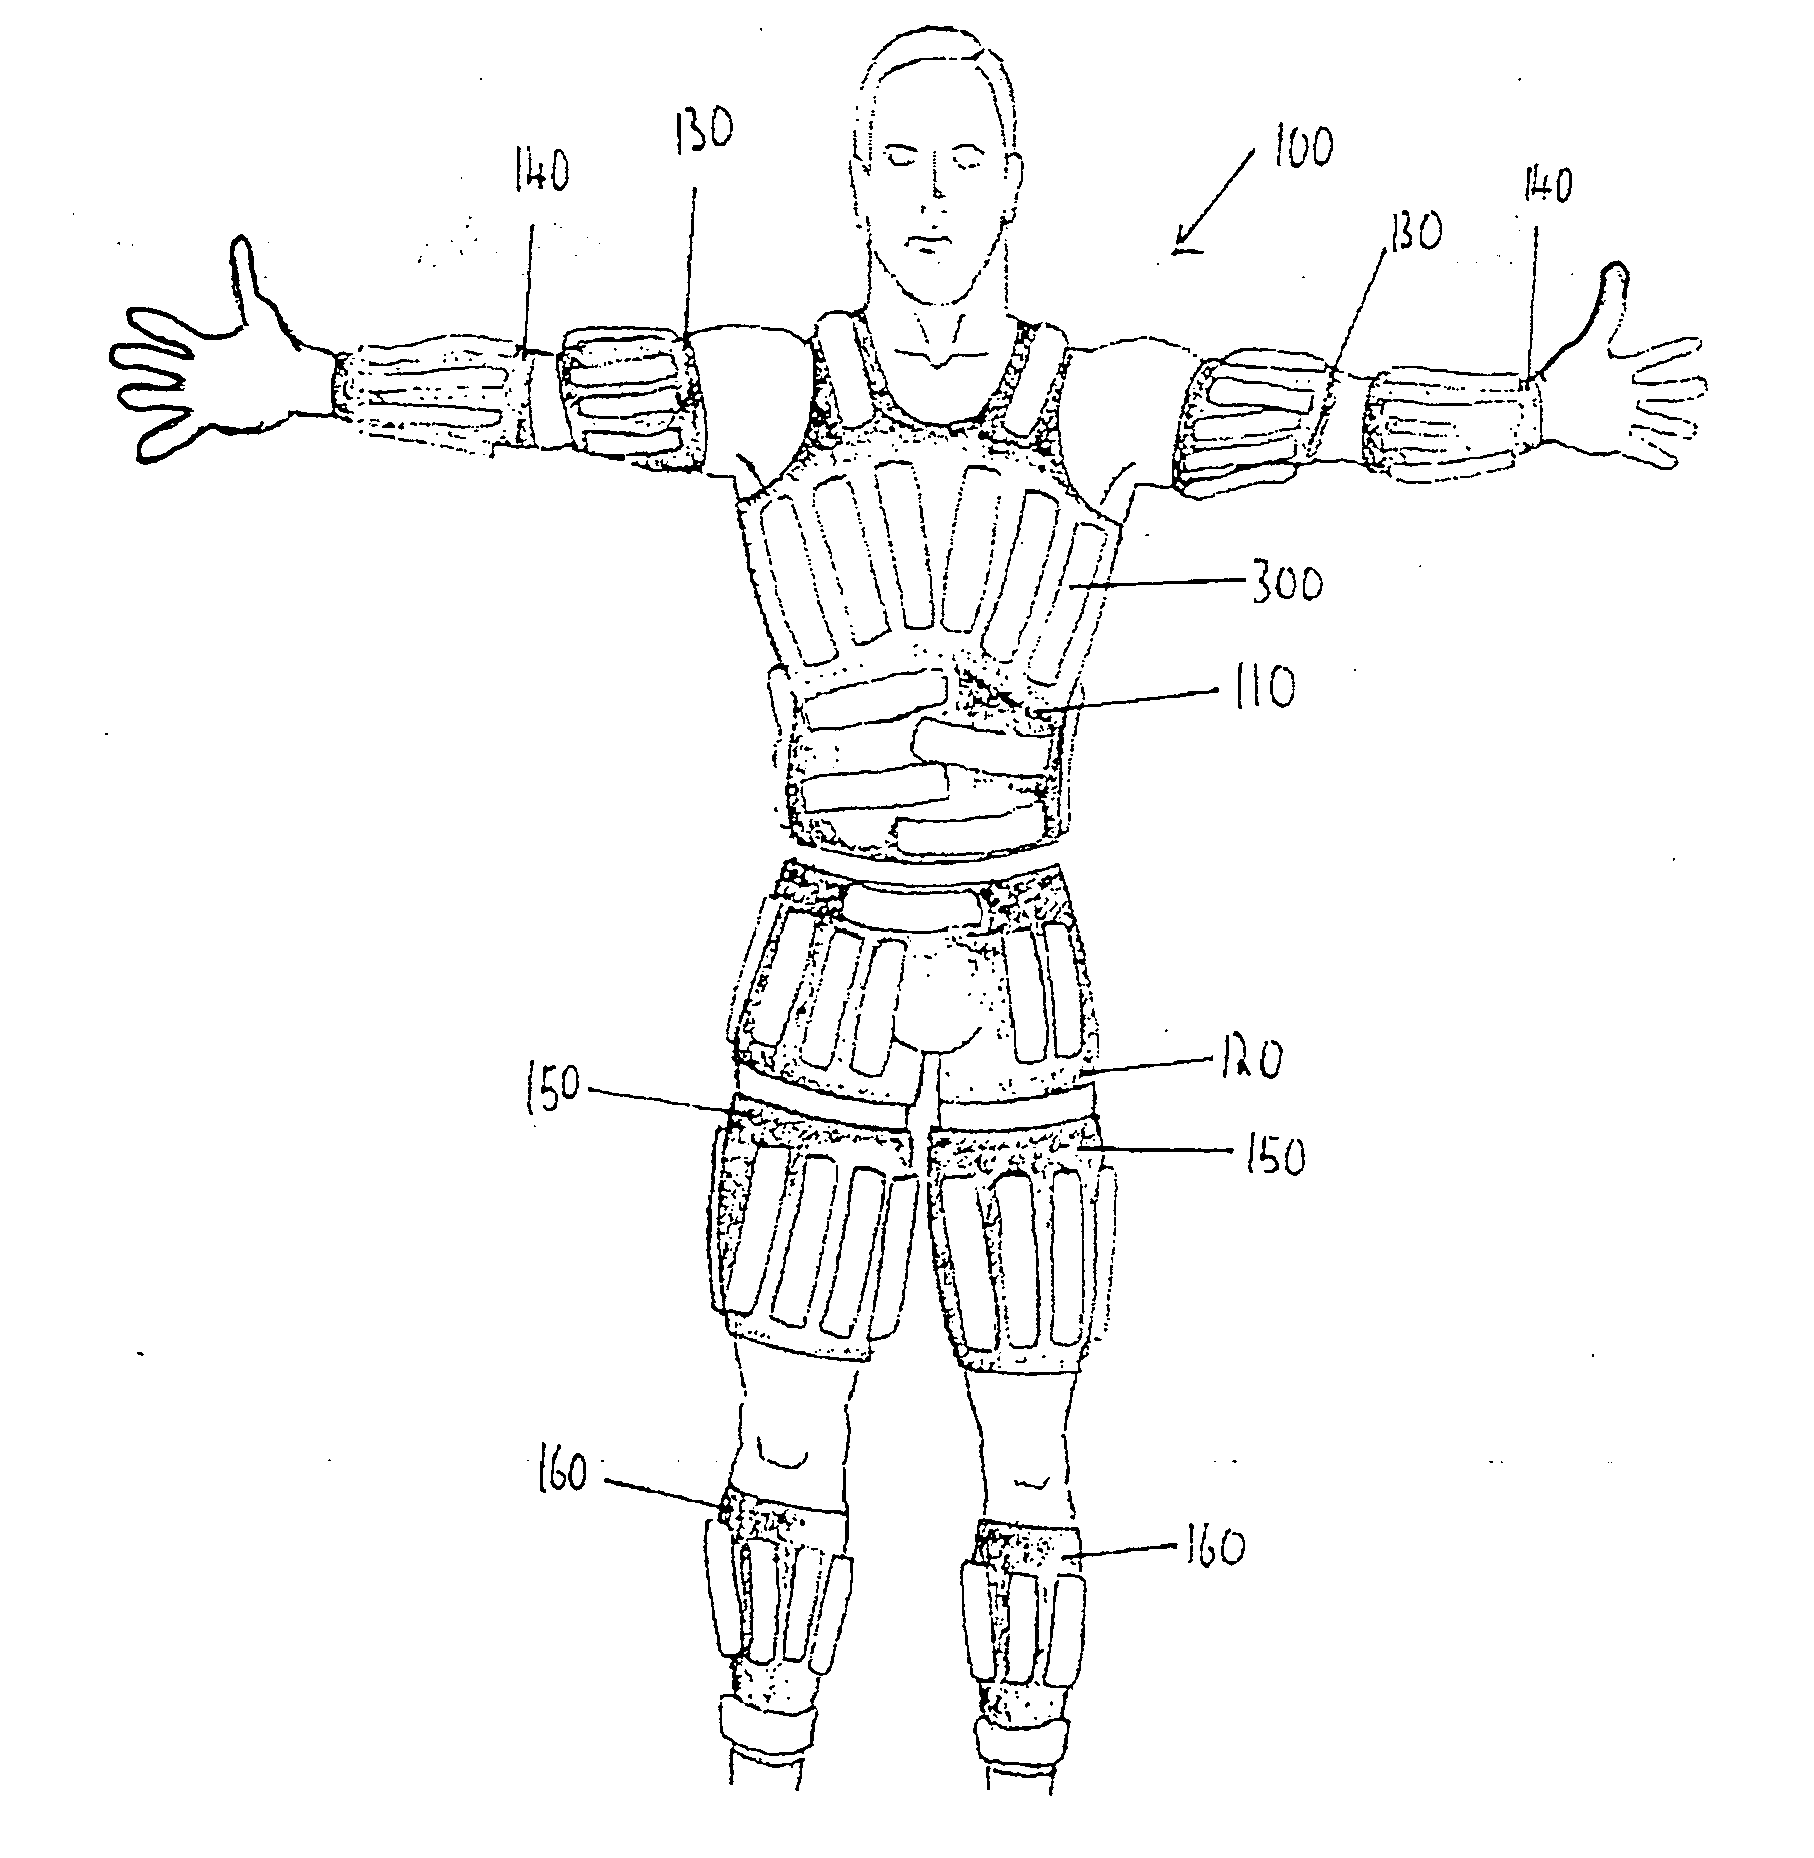 Exoskeleton system